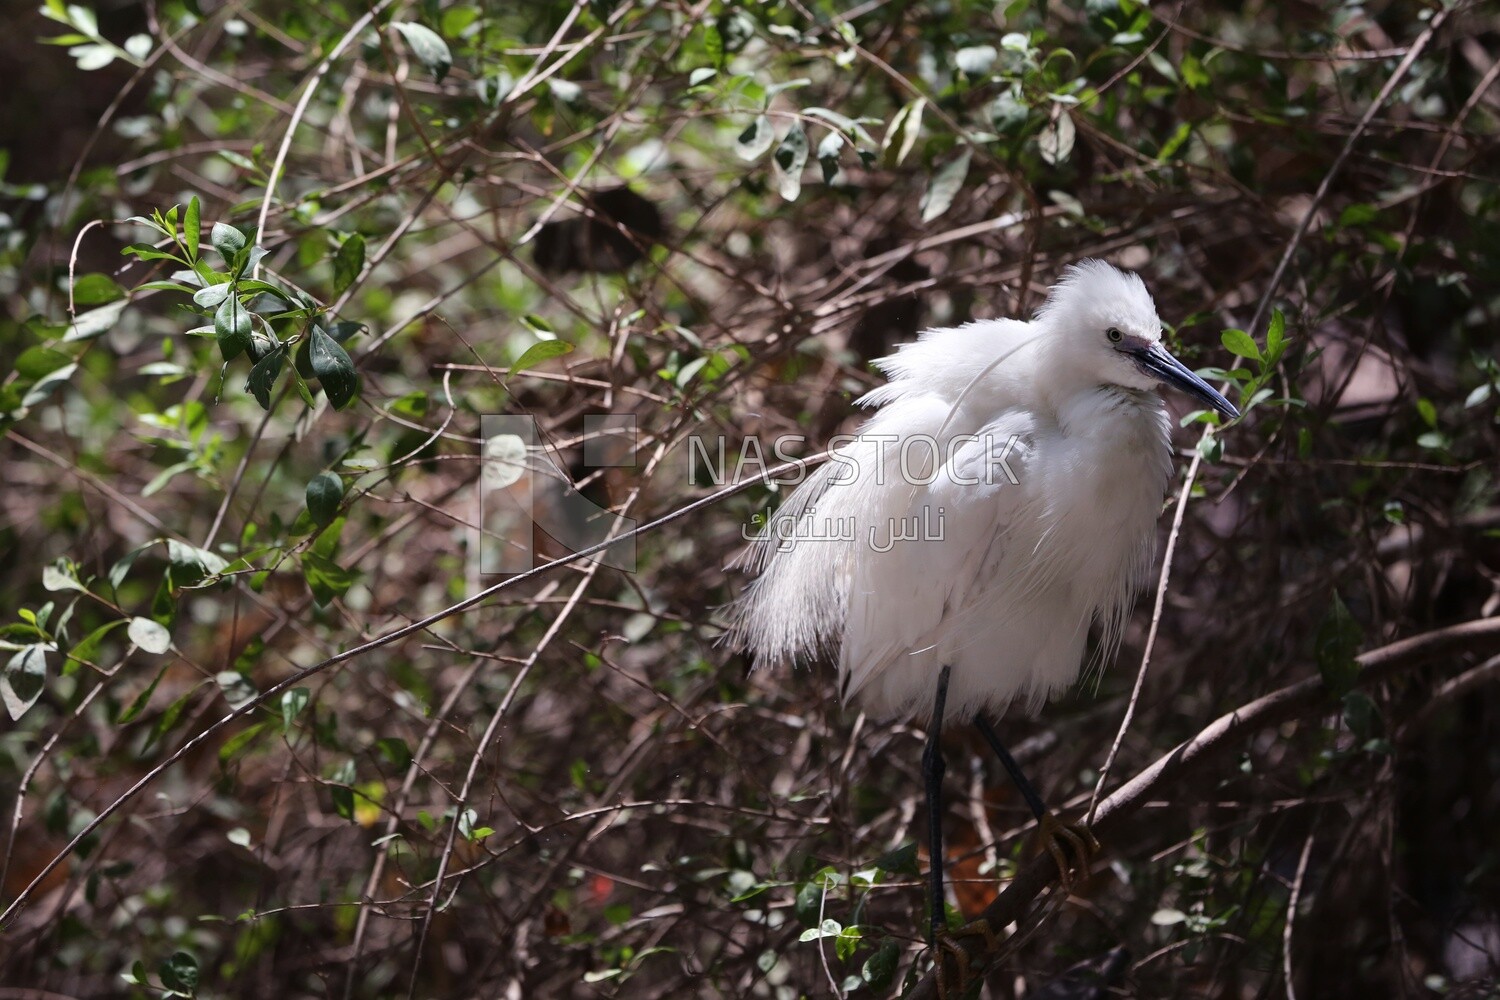 طائر أبيض كبير على شجرة بحديقة حيوان الجيزة